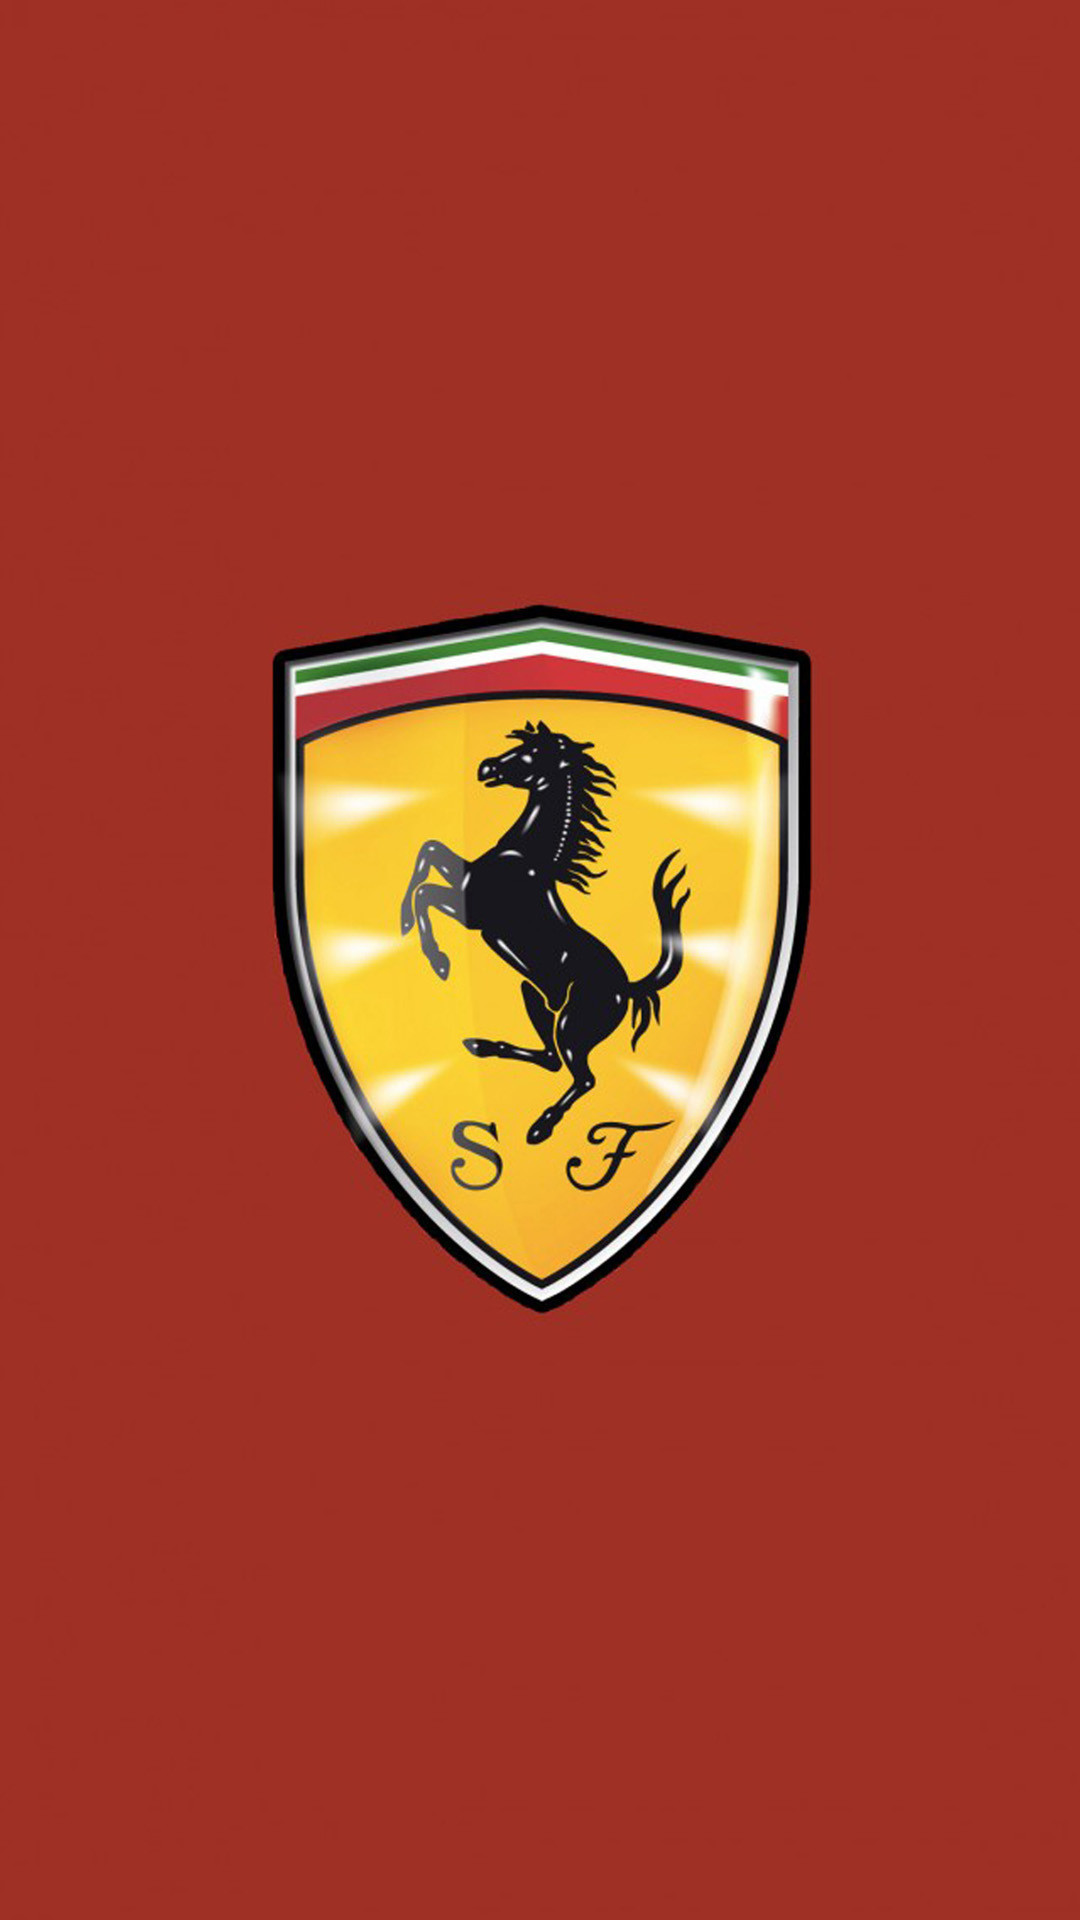 Lamborghini Logo Wallpaper Iphone - Ferrari Wallpaper Iphone 6 Hd , HD Wallpaper & Backgrounds